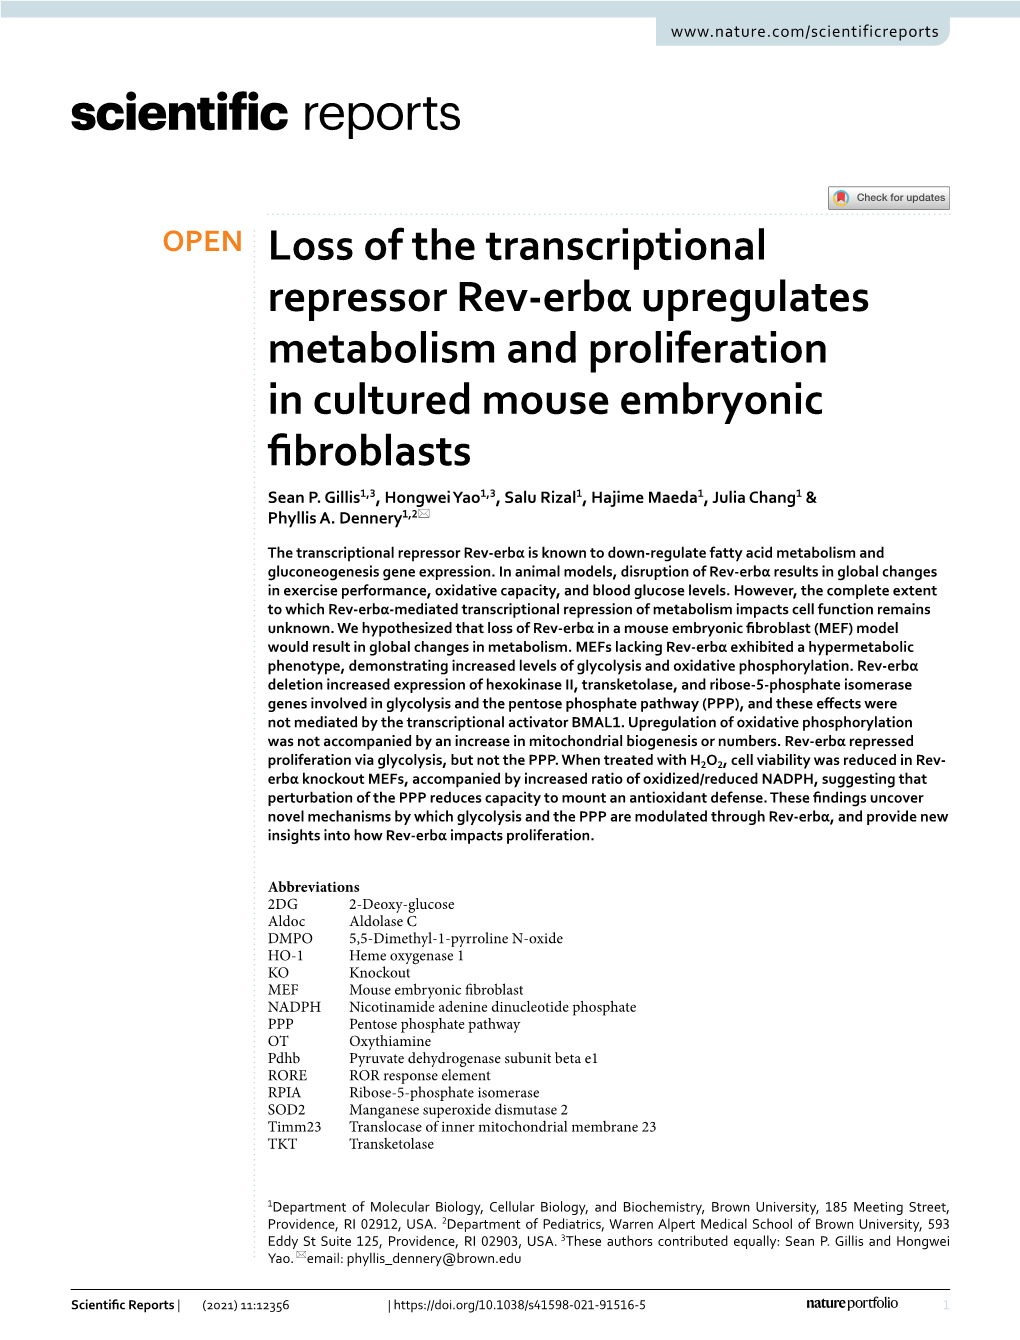 Loss of the Transcriptional Repressor Rev-Erbα Upregulates Metabolism